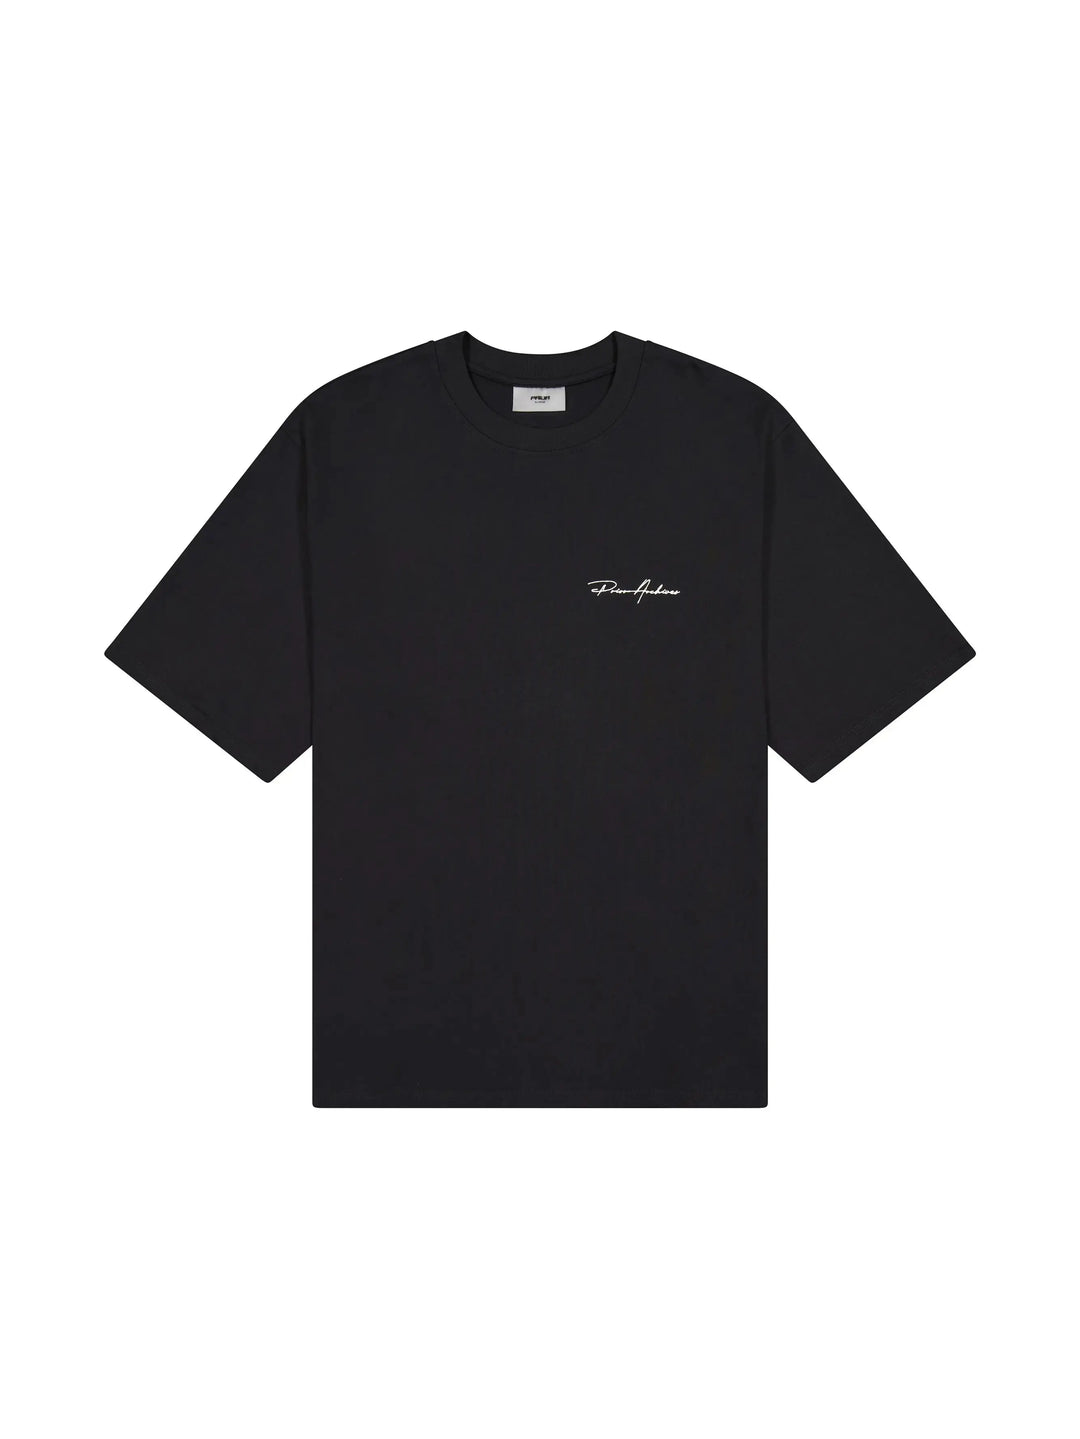 Prior Embroidery Logo Oversized T-shirt Onyx 2.0 (New Sizing)